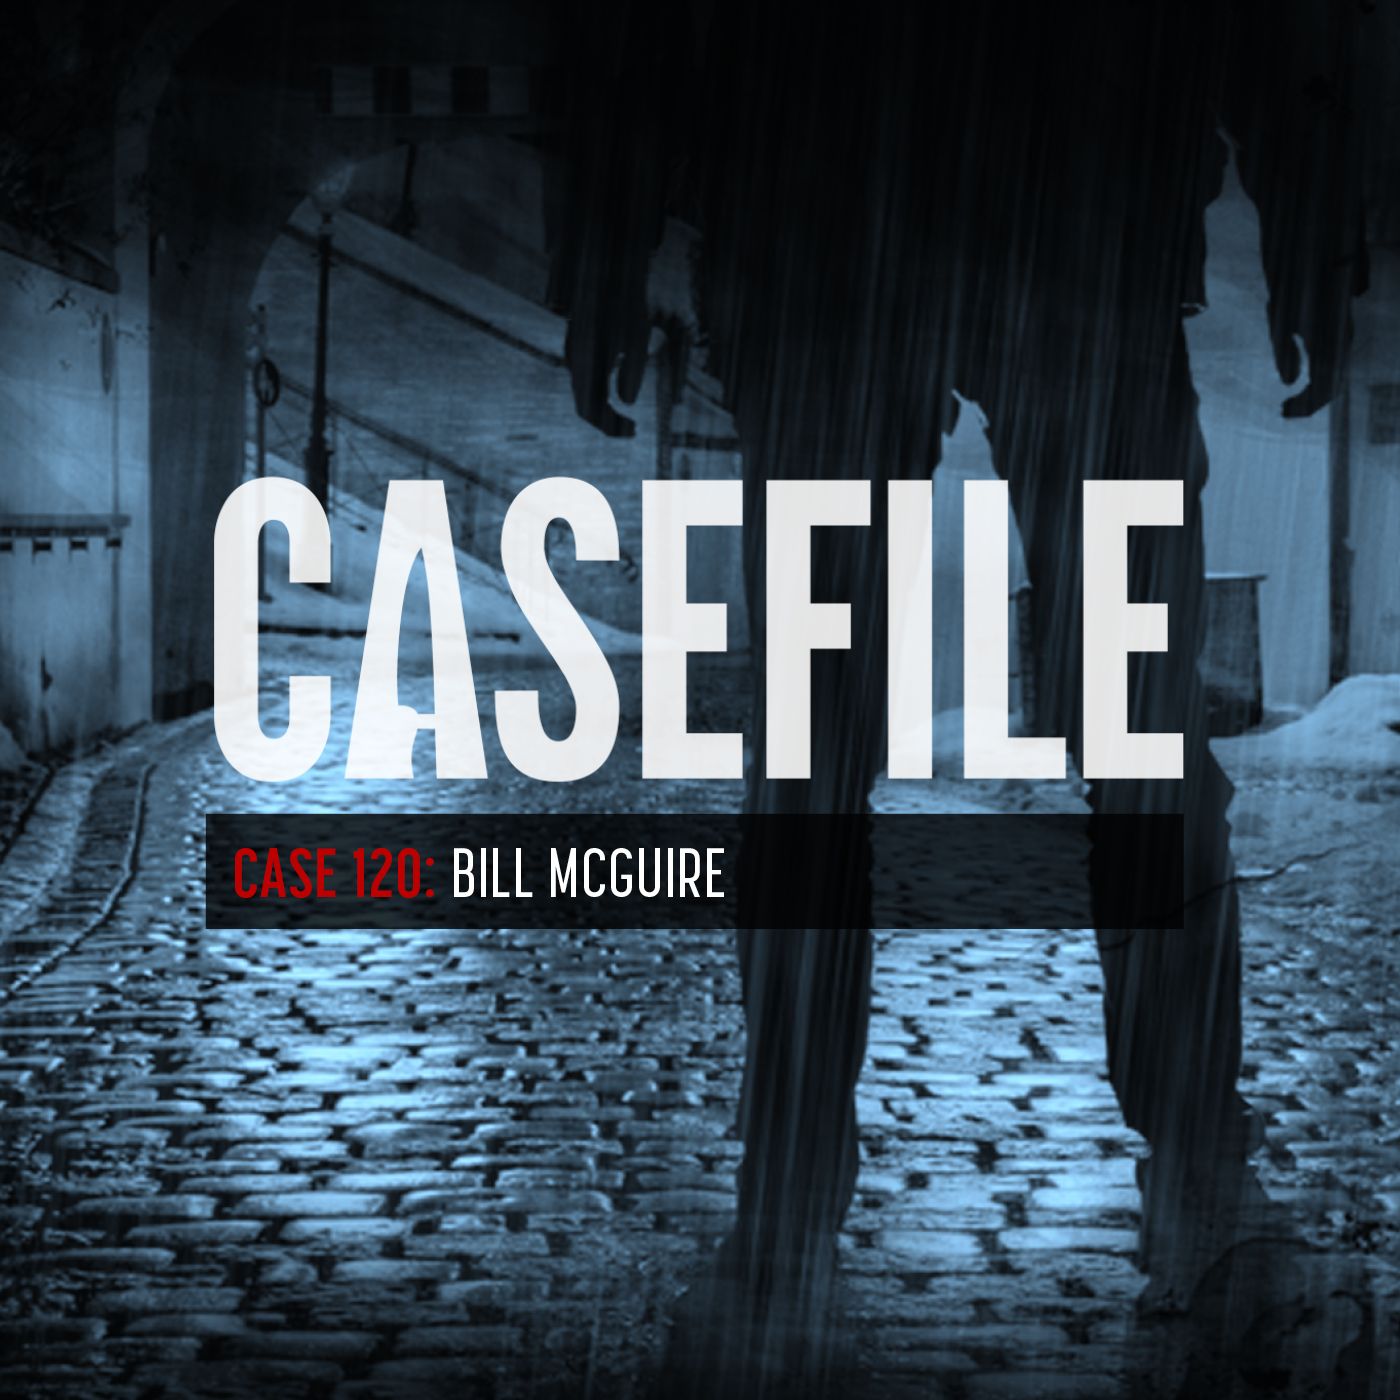 Case 120: Bill McGuire